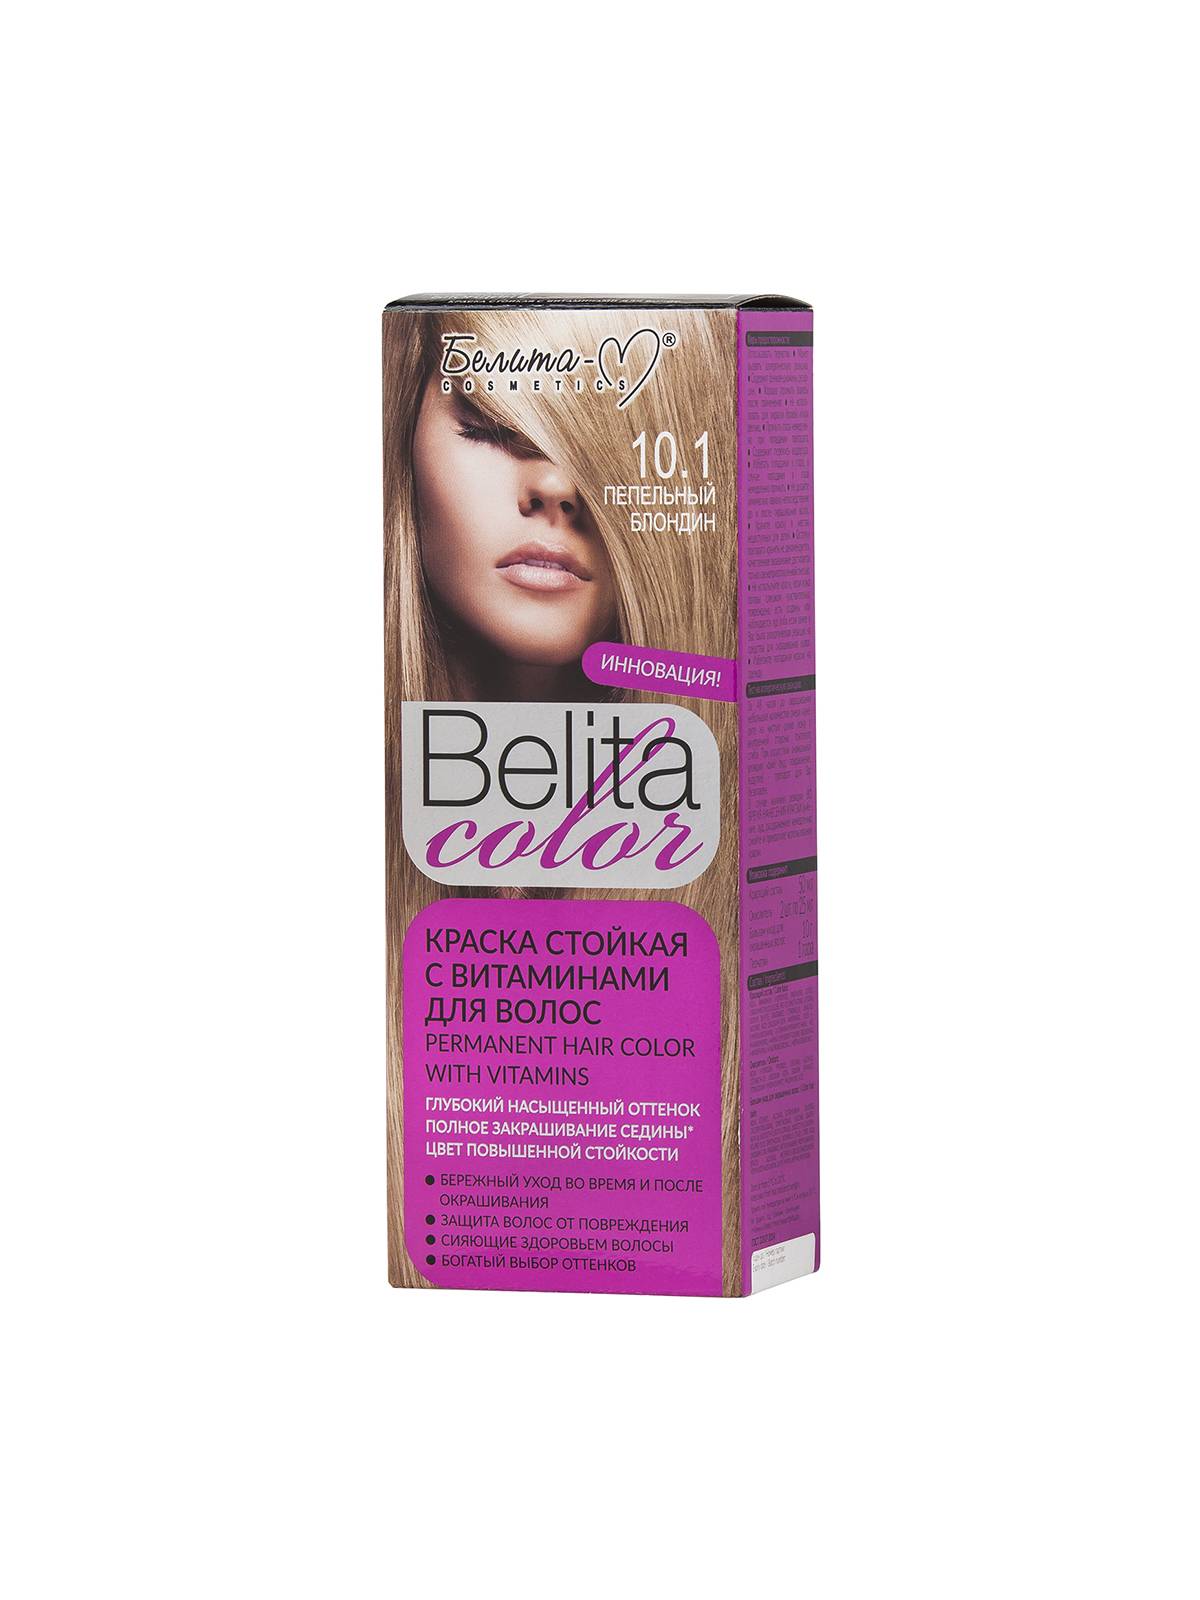 Краска стойкая с витаминами для волос серии "Belita сolor" № 10.1 Пепельный блондин (к-т)